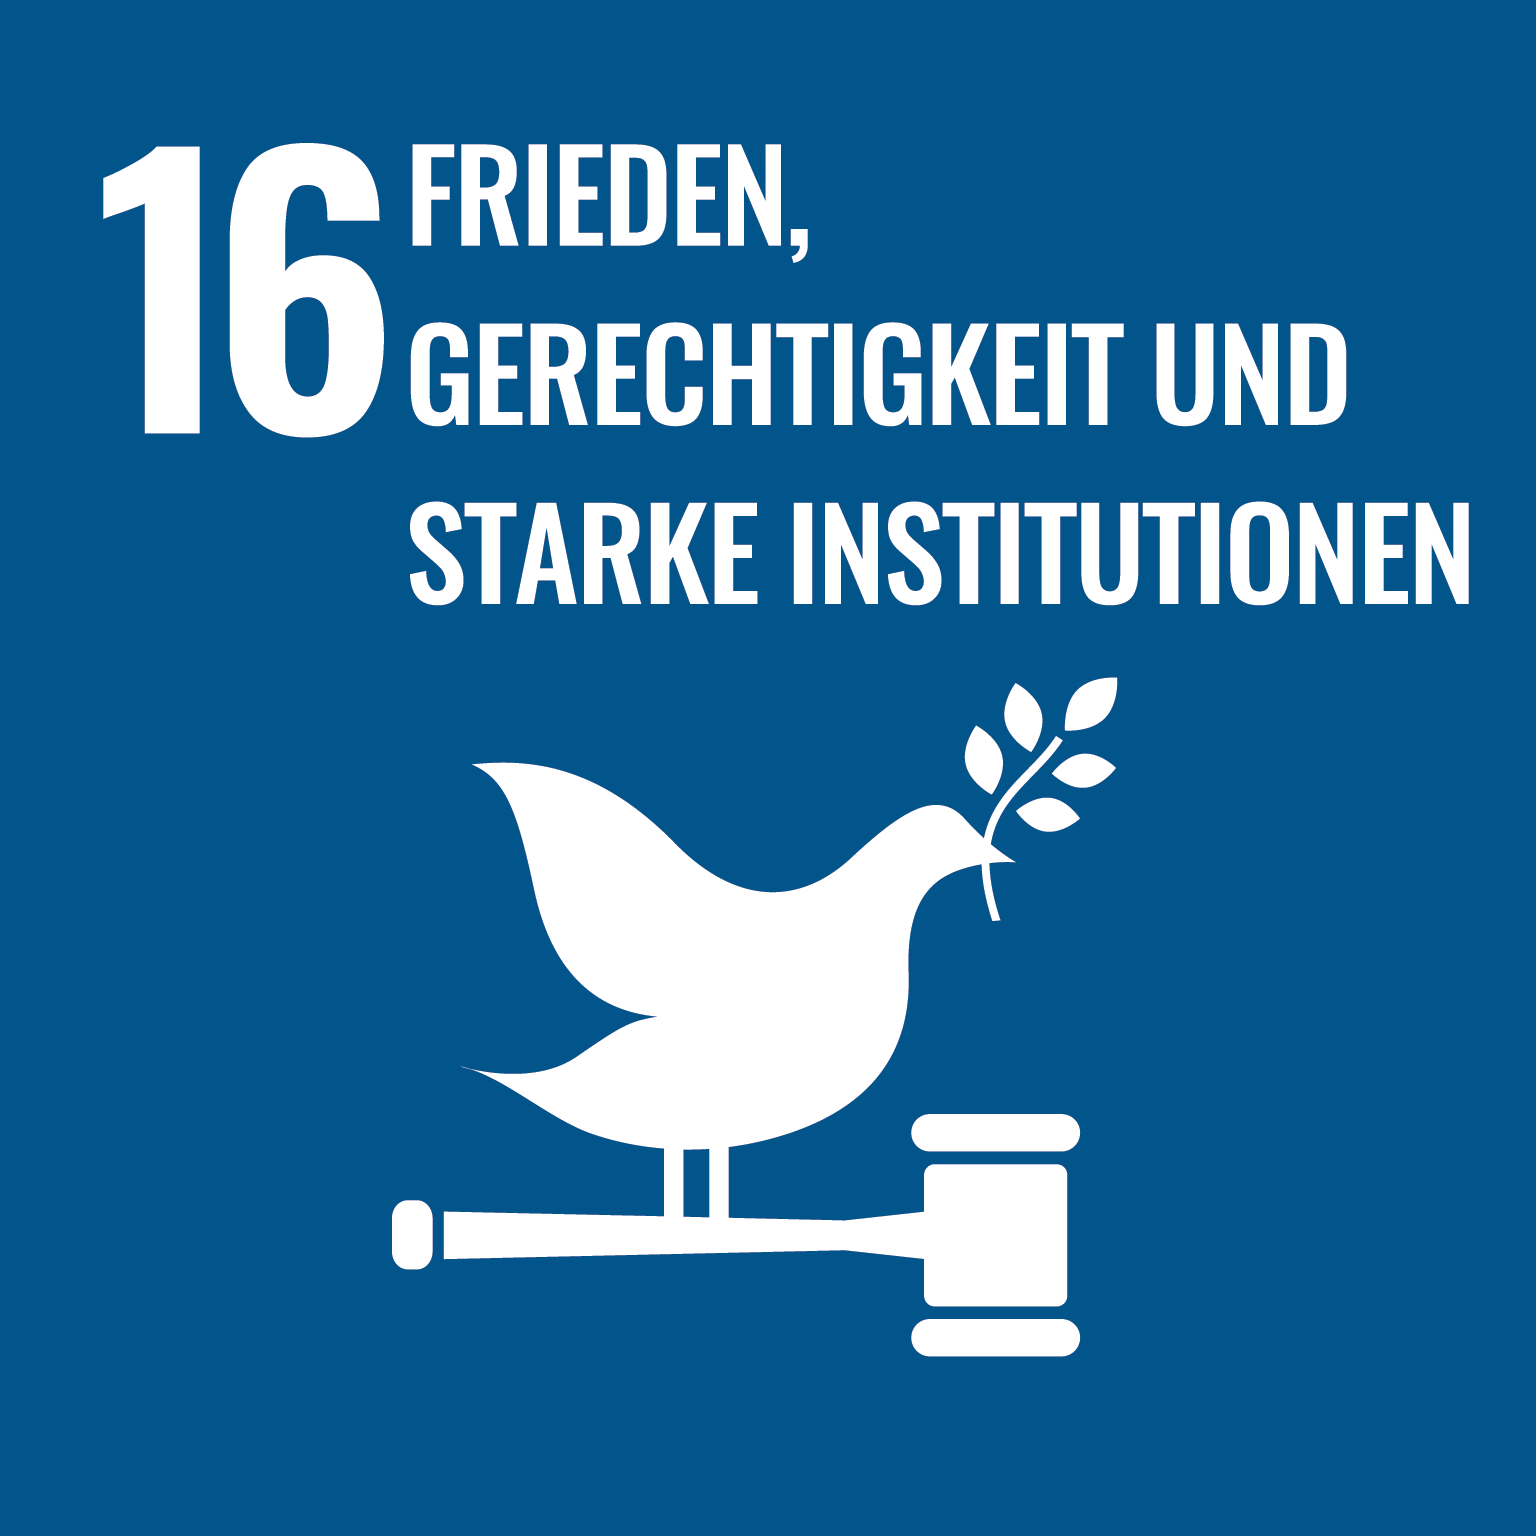 SDG 16: Frieden, Gerechtigkeit und starke Institutionen